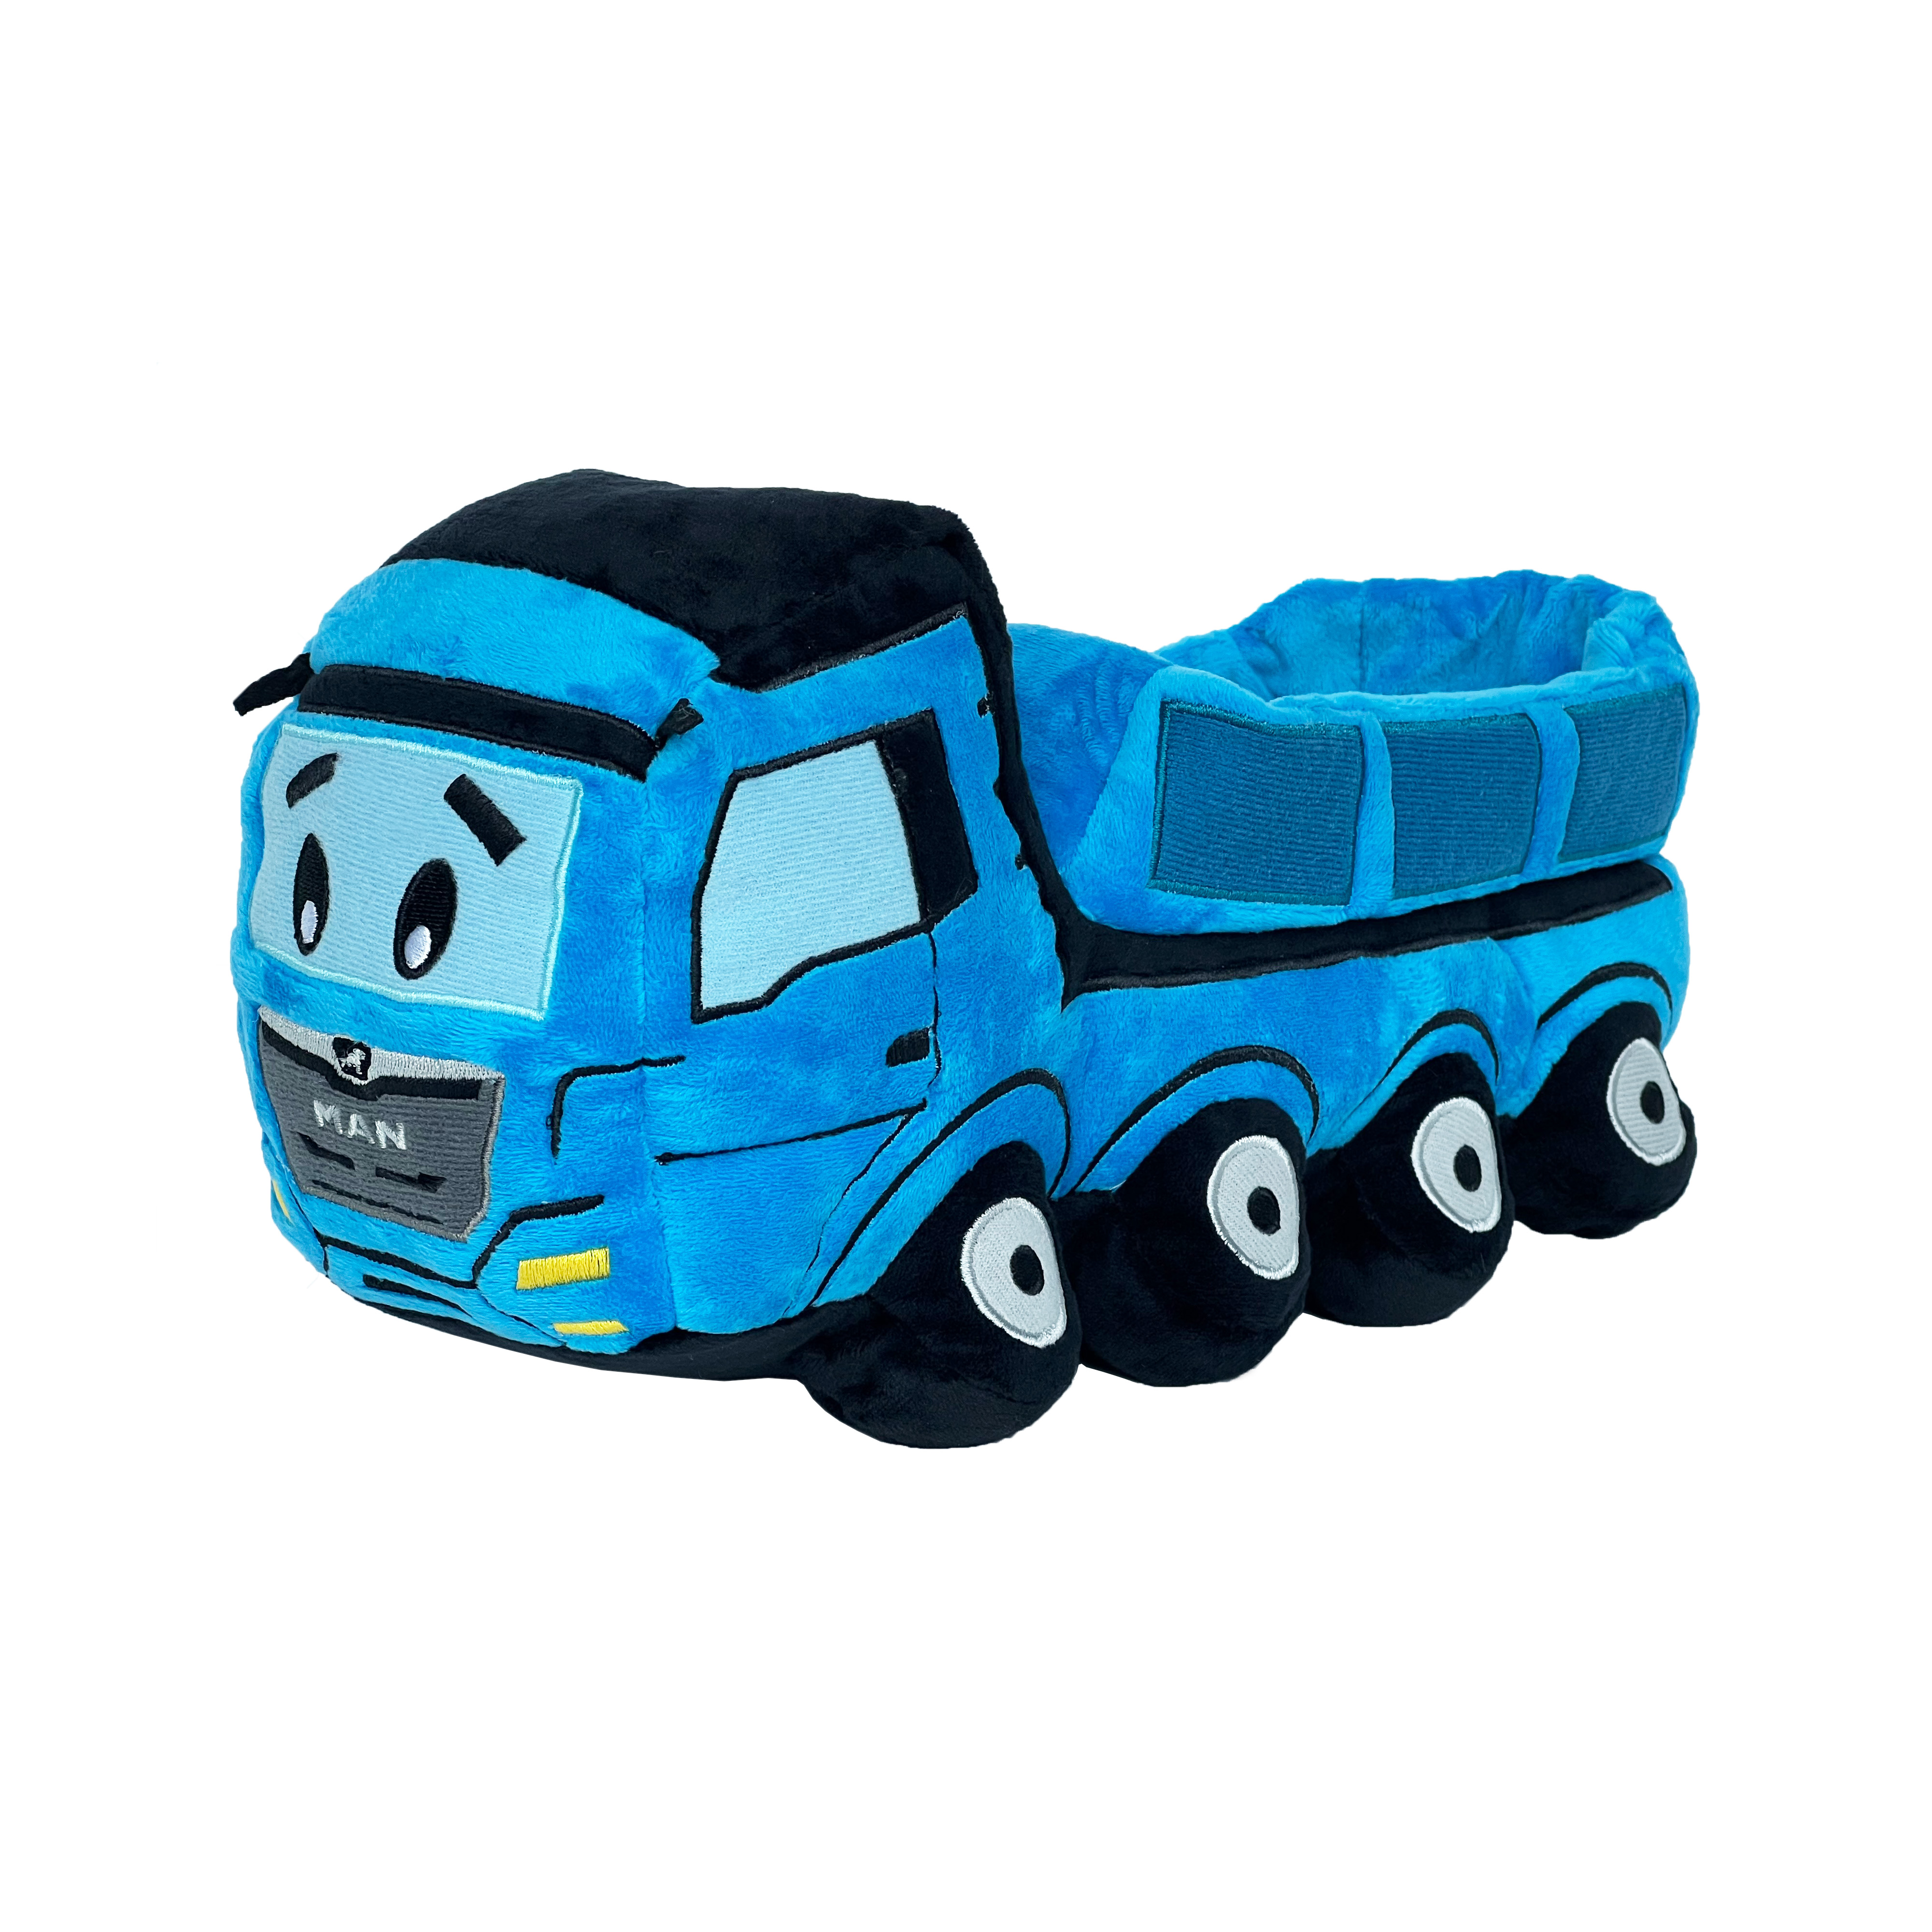 MAN Trucker's World Plüschtruck Kipper blau